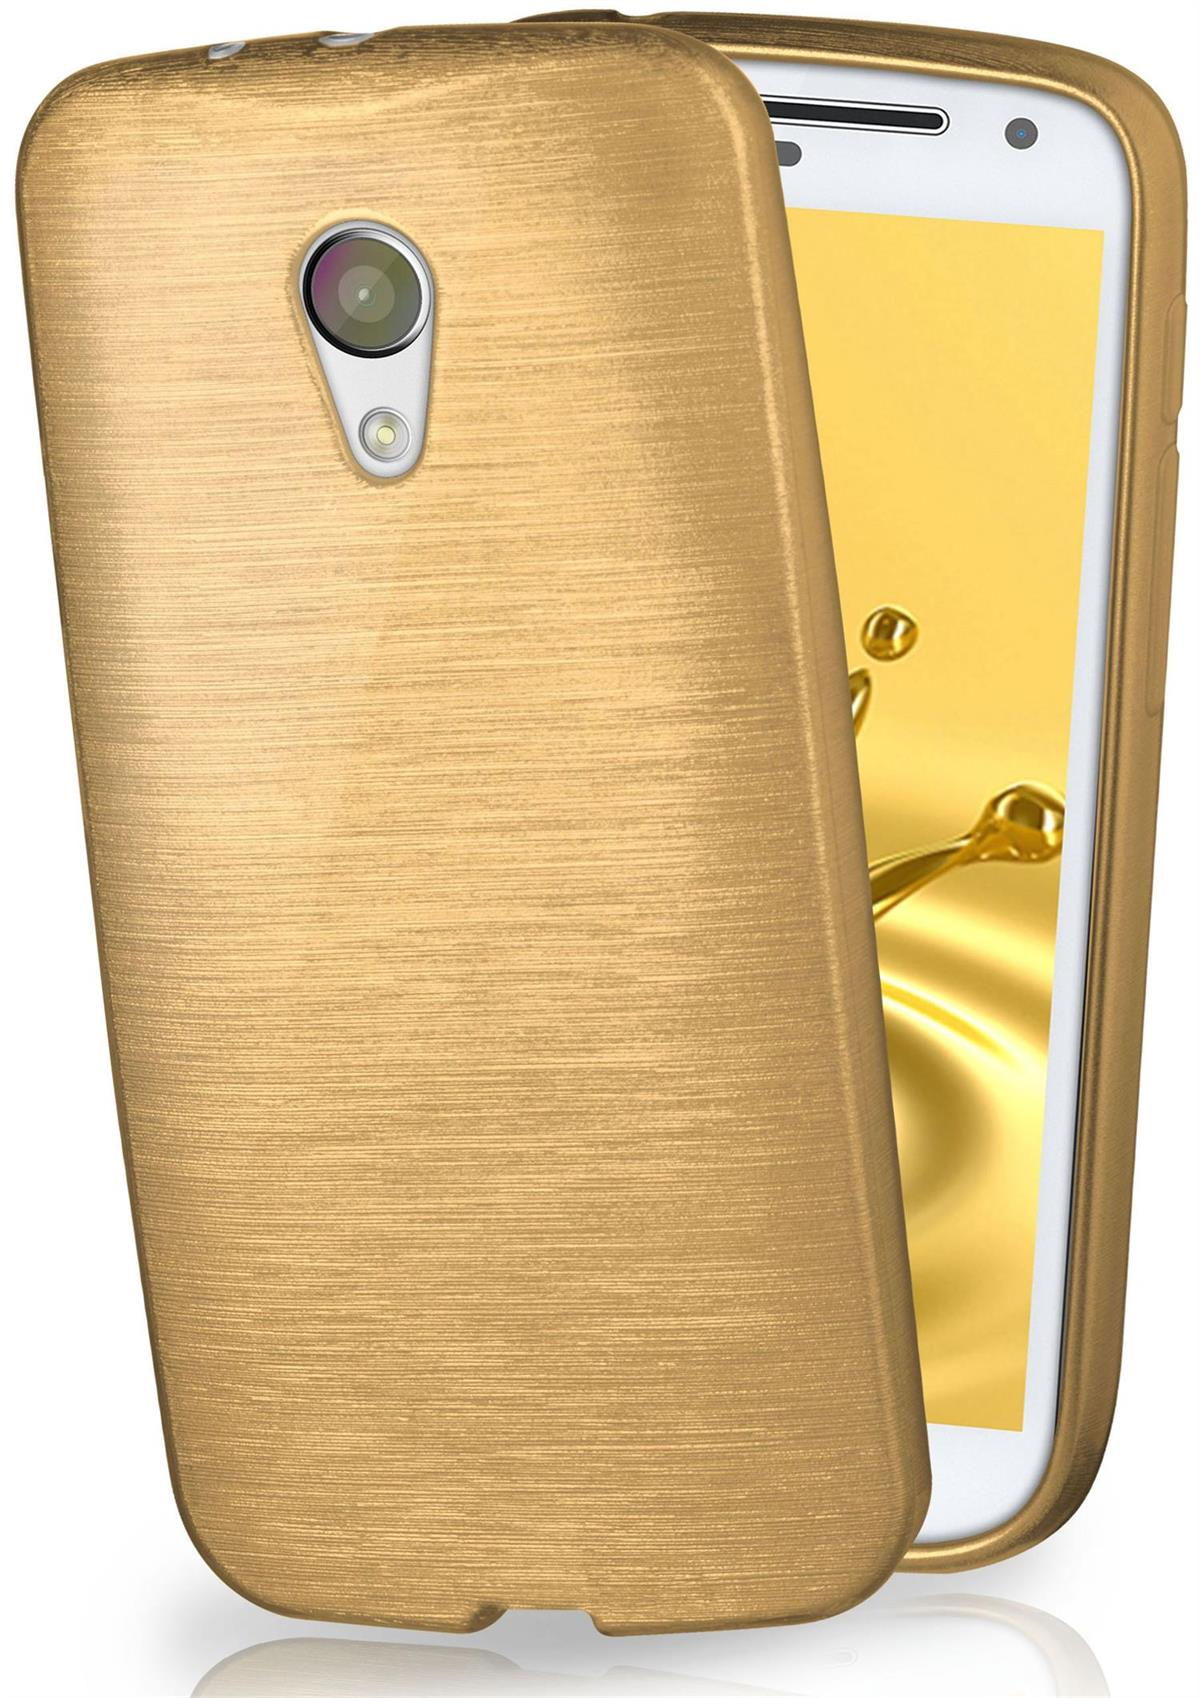 MOEX Brushed Case, Backcover, Motorola, Ivory-Gold G2, Moto